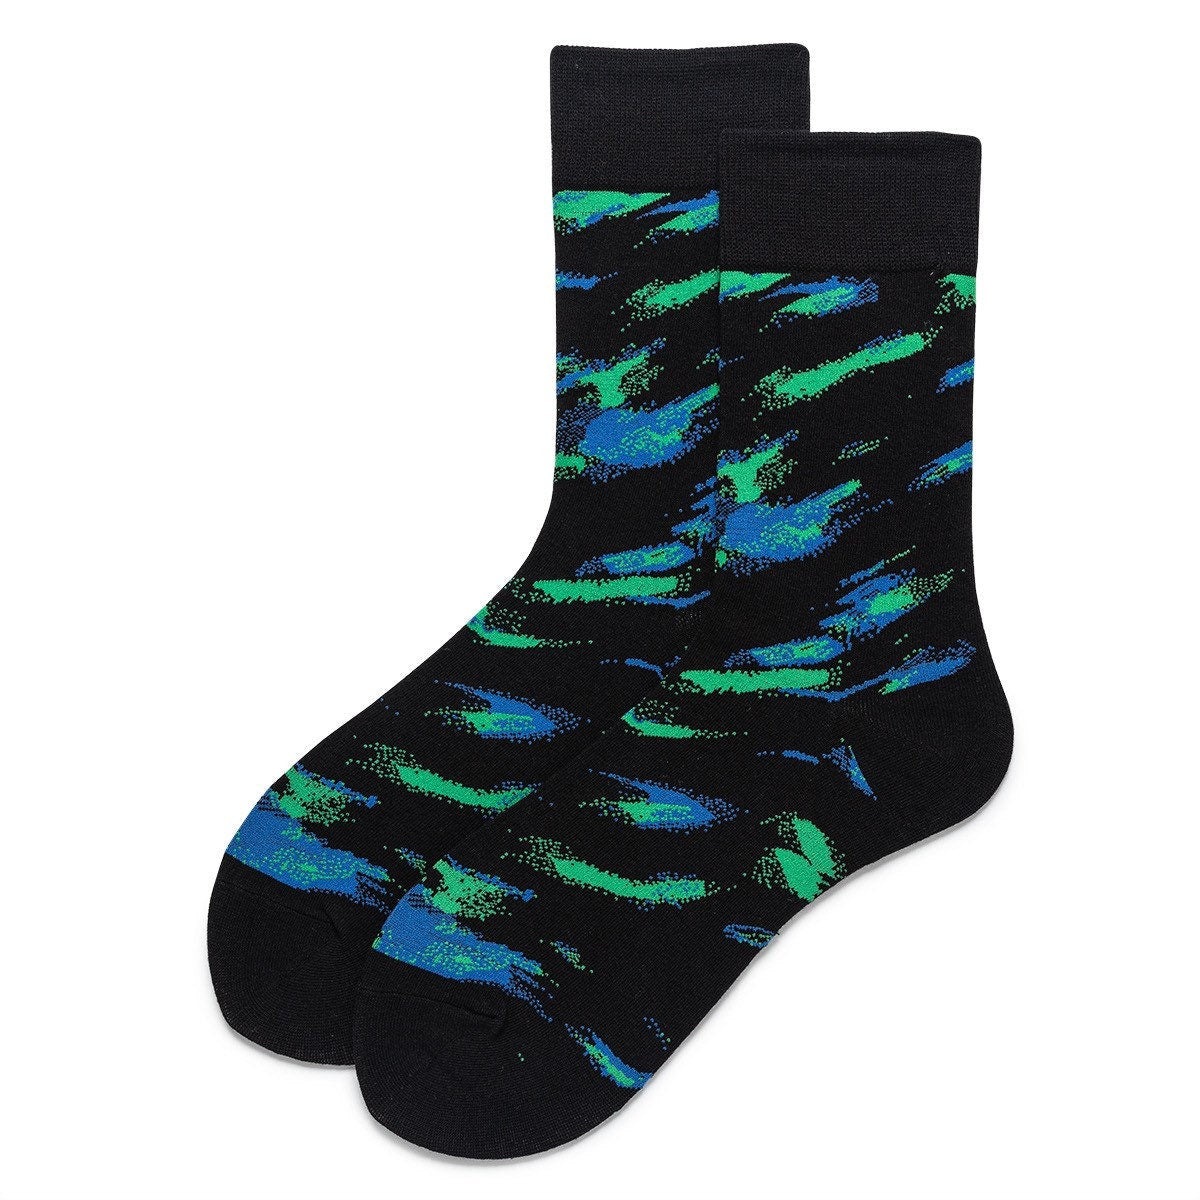 Miss June’s, Women’s Cotton socks, Cool socks, colorful socks, gift,patterned socks, design socks,Unisex socks,Art socks